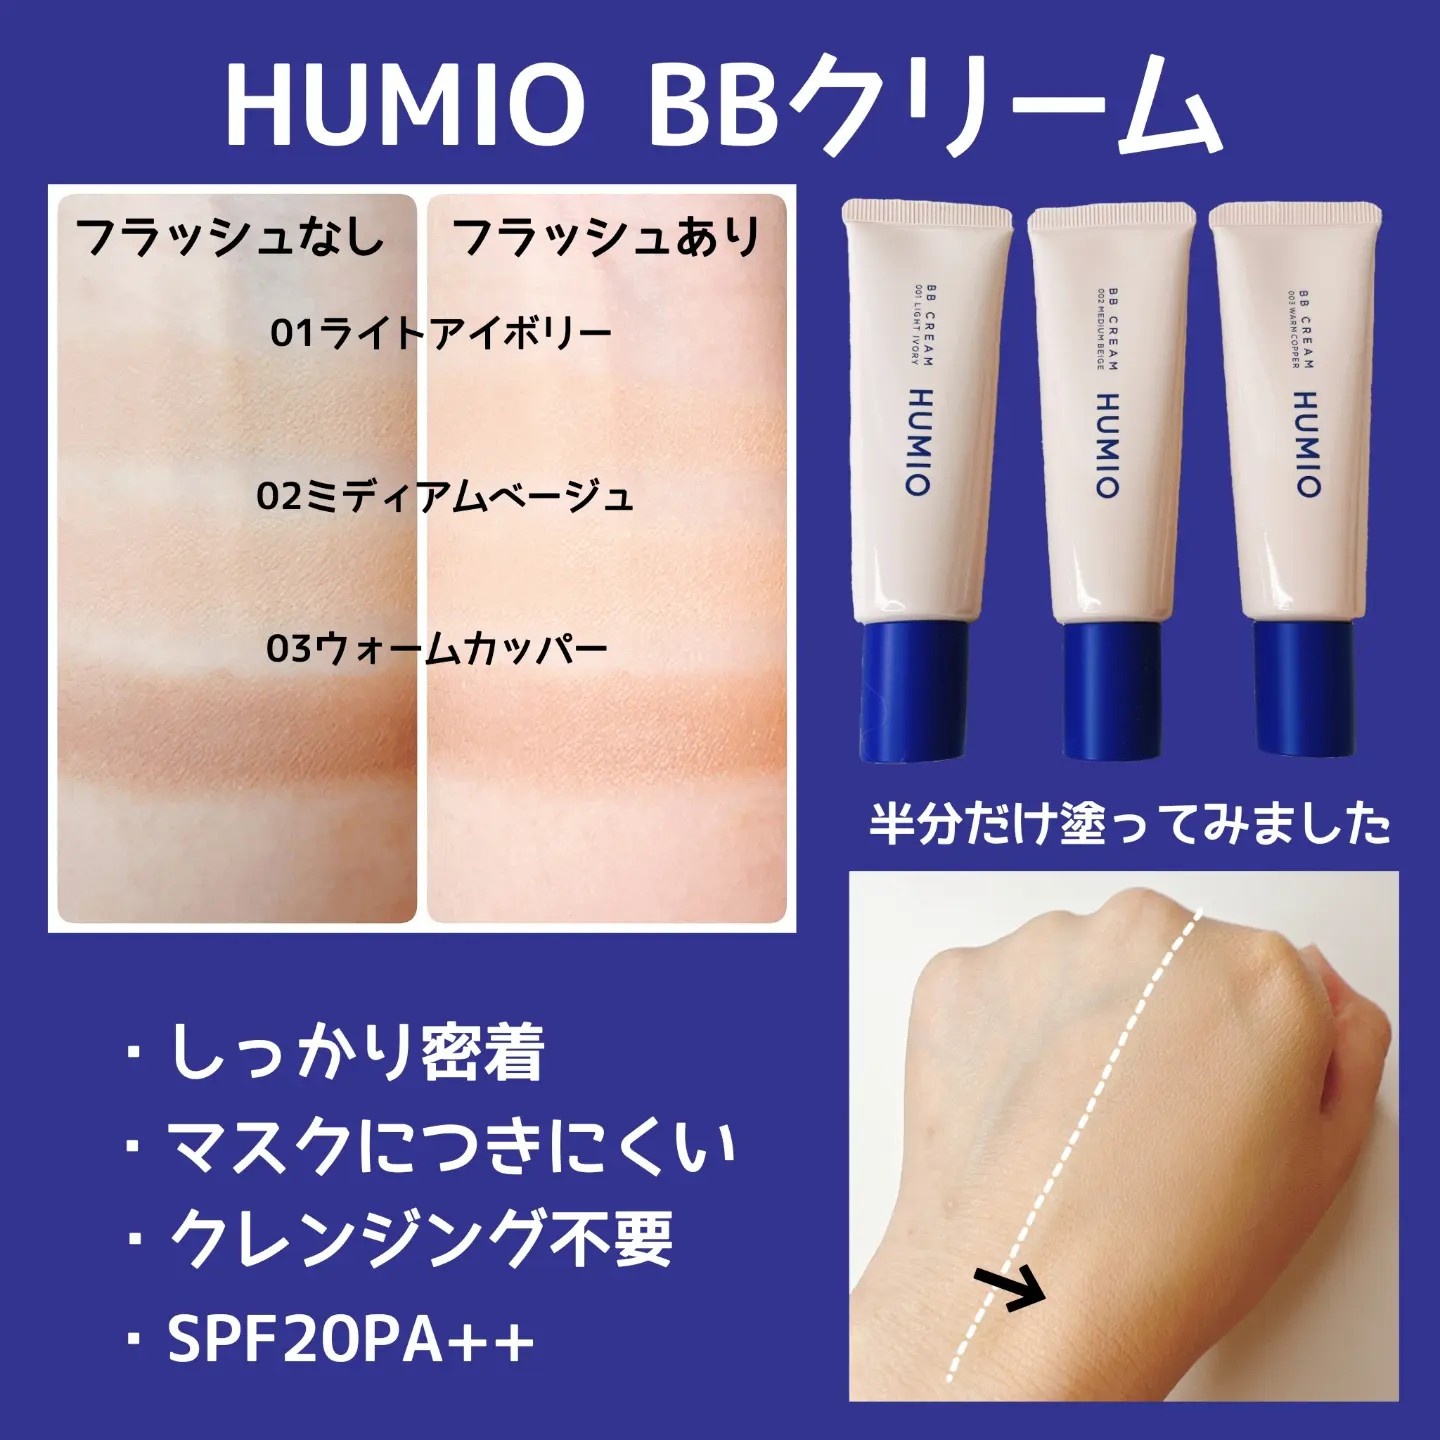 メカニカル HUMIO 薬用BBクリーム コンシーラーセット - 通販